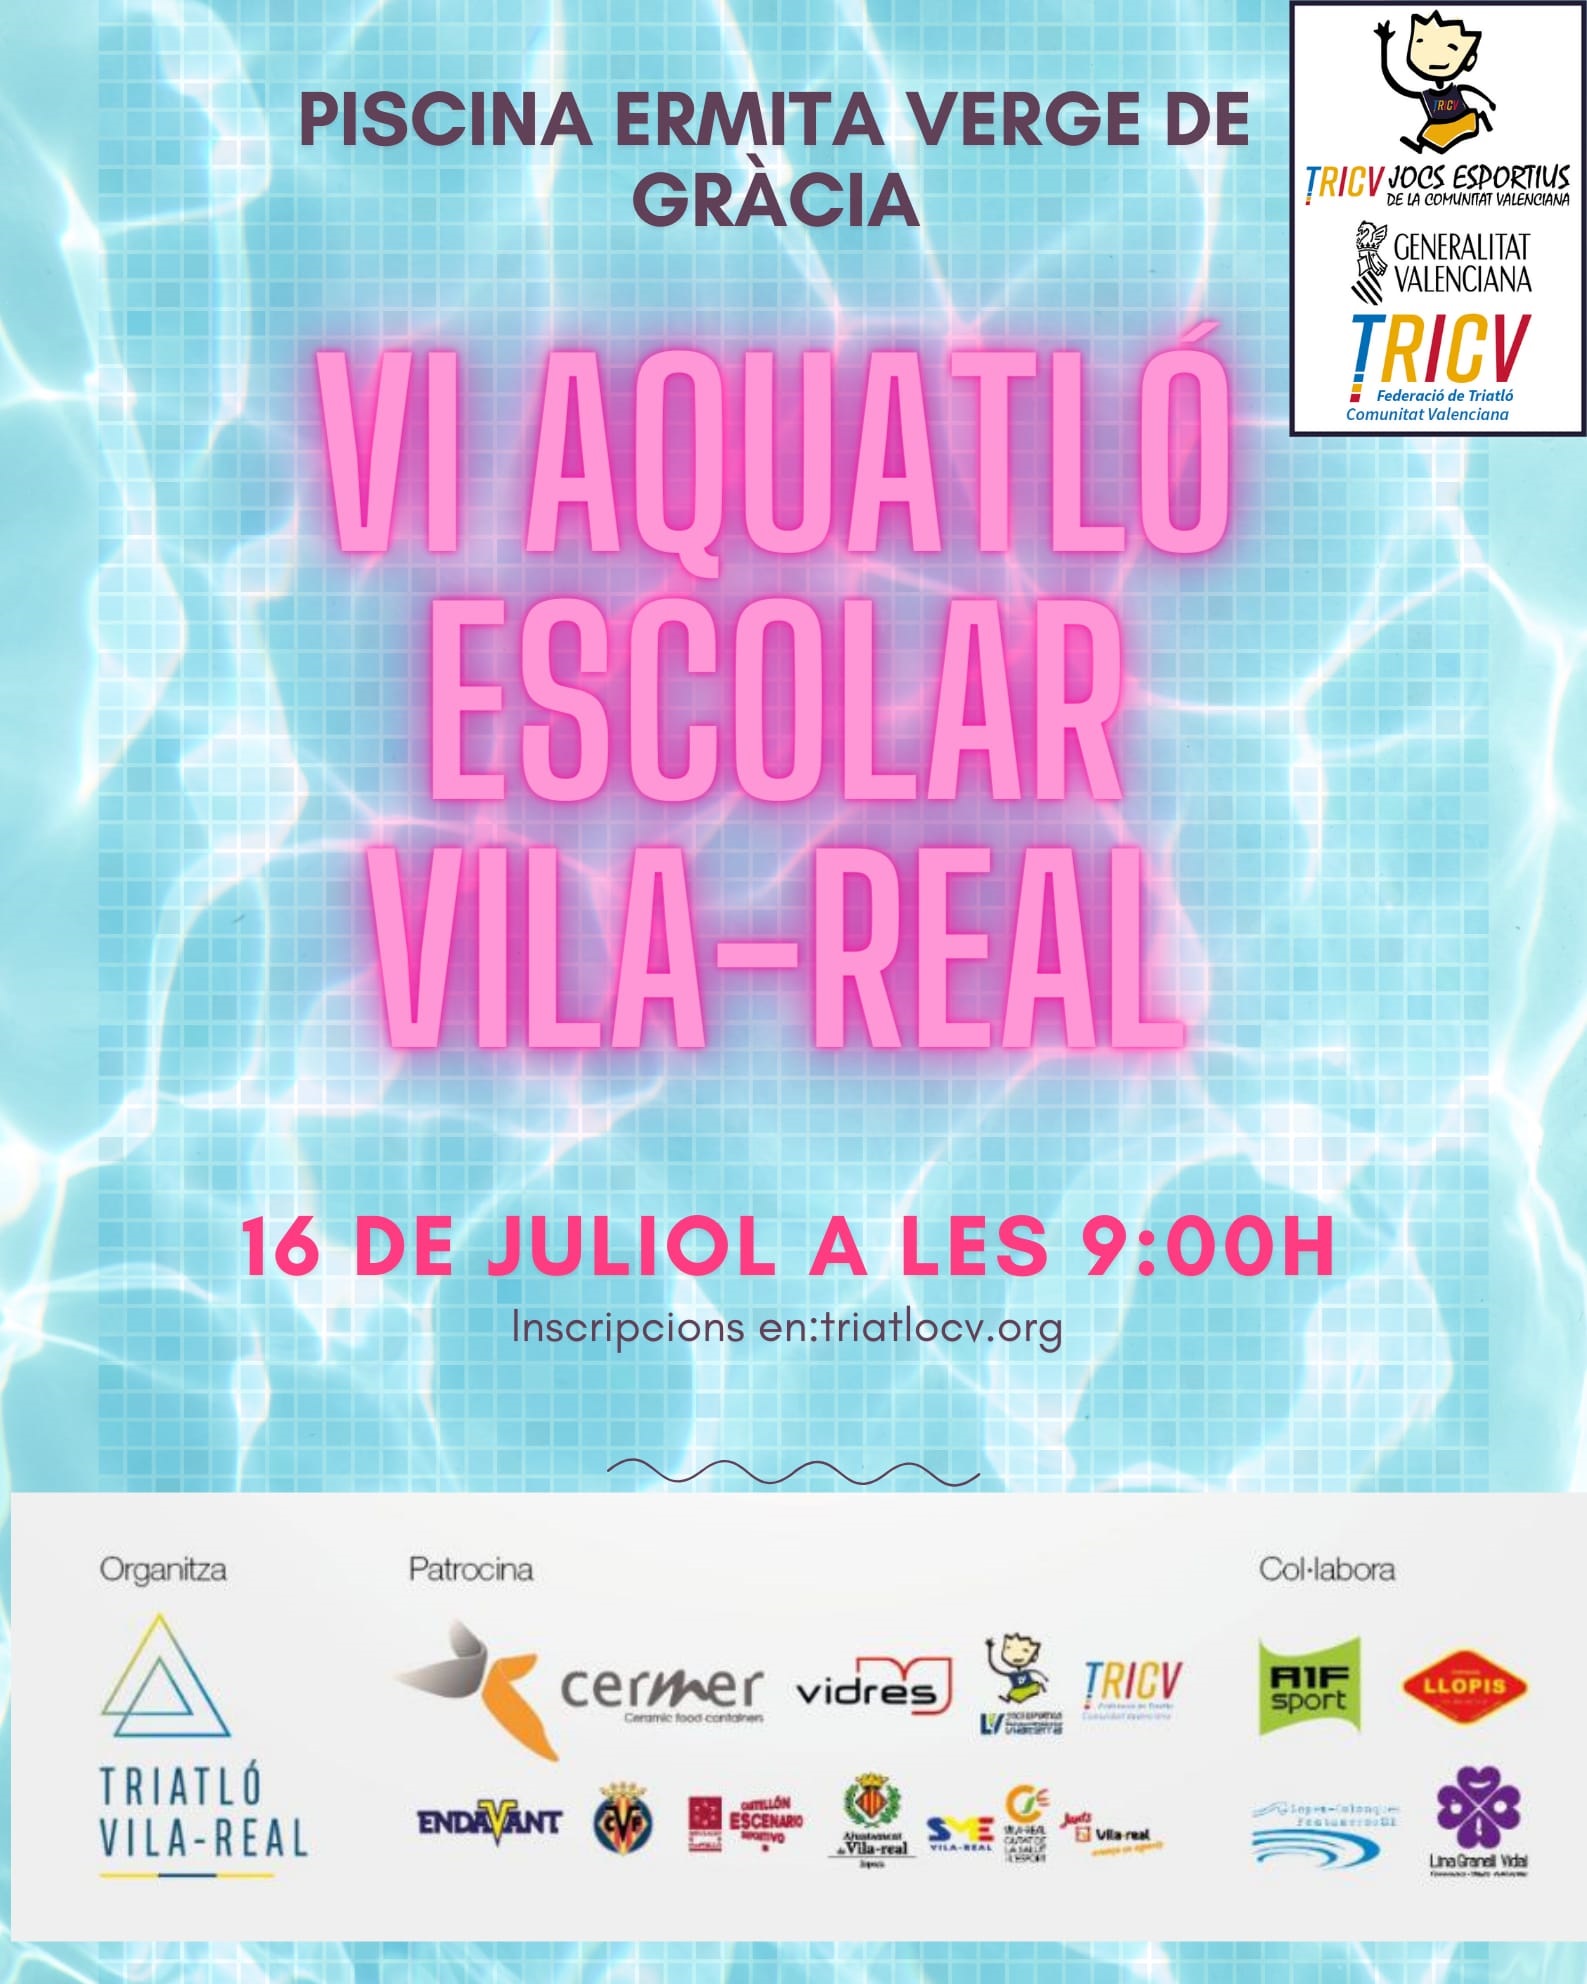 La piscina del Termet reunirá a 300 niños y niñas en el VI Acuatlón Escolar del Club Triatló Vila-real